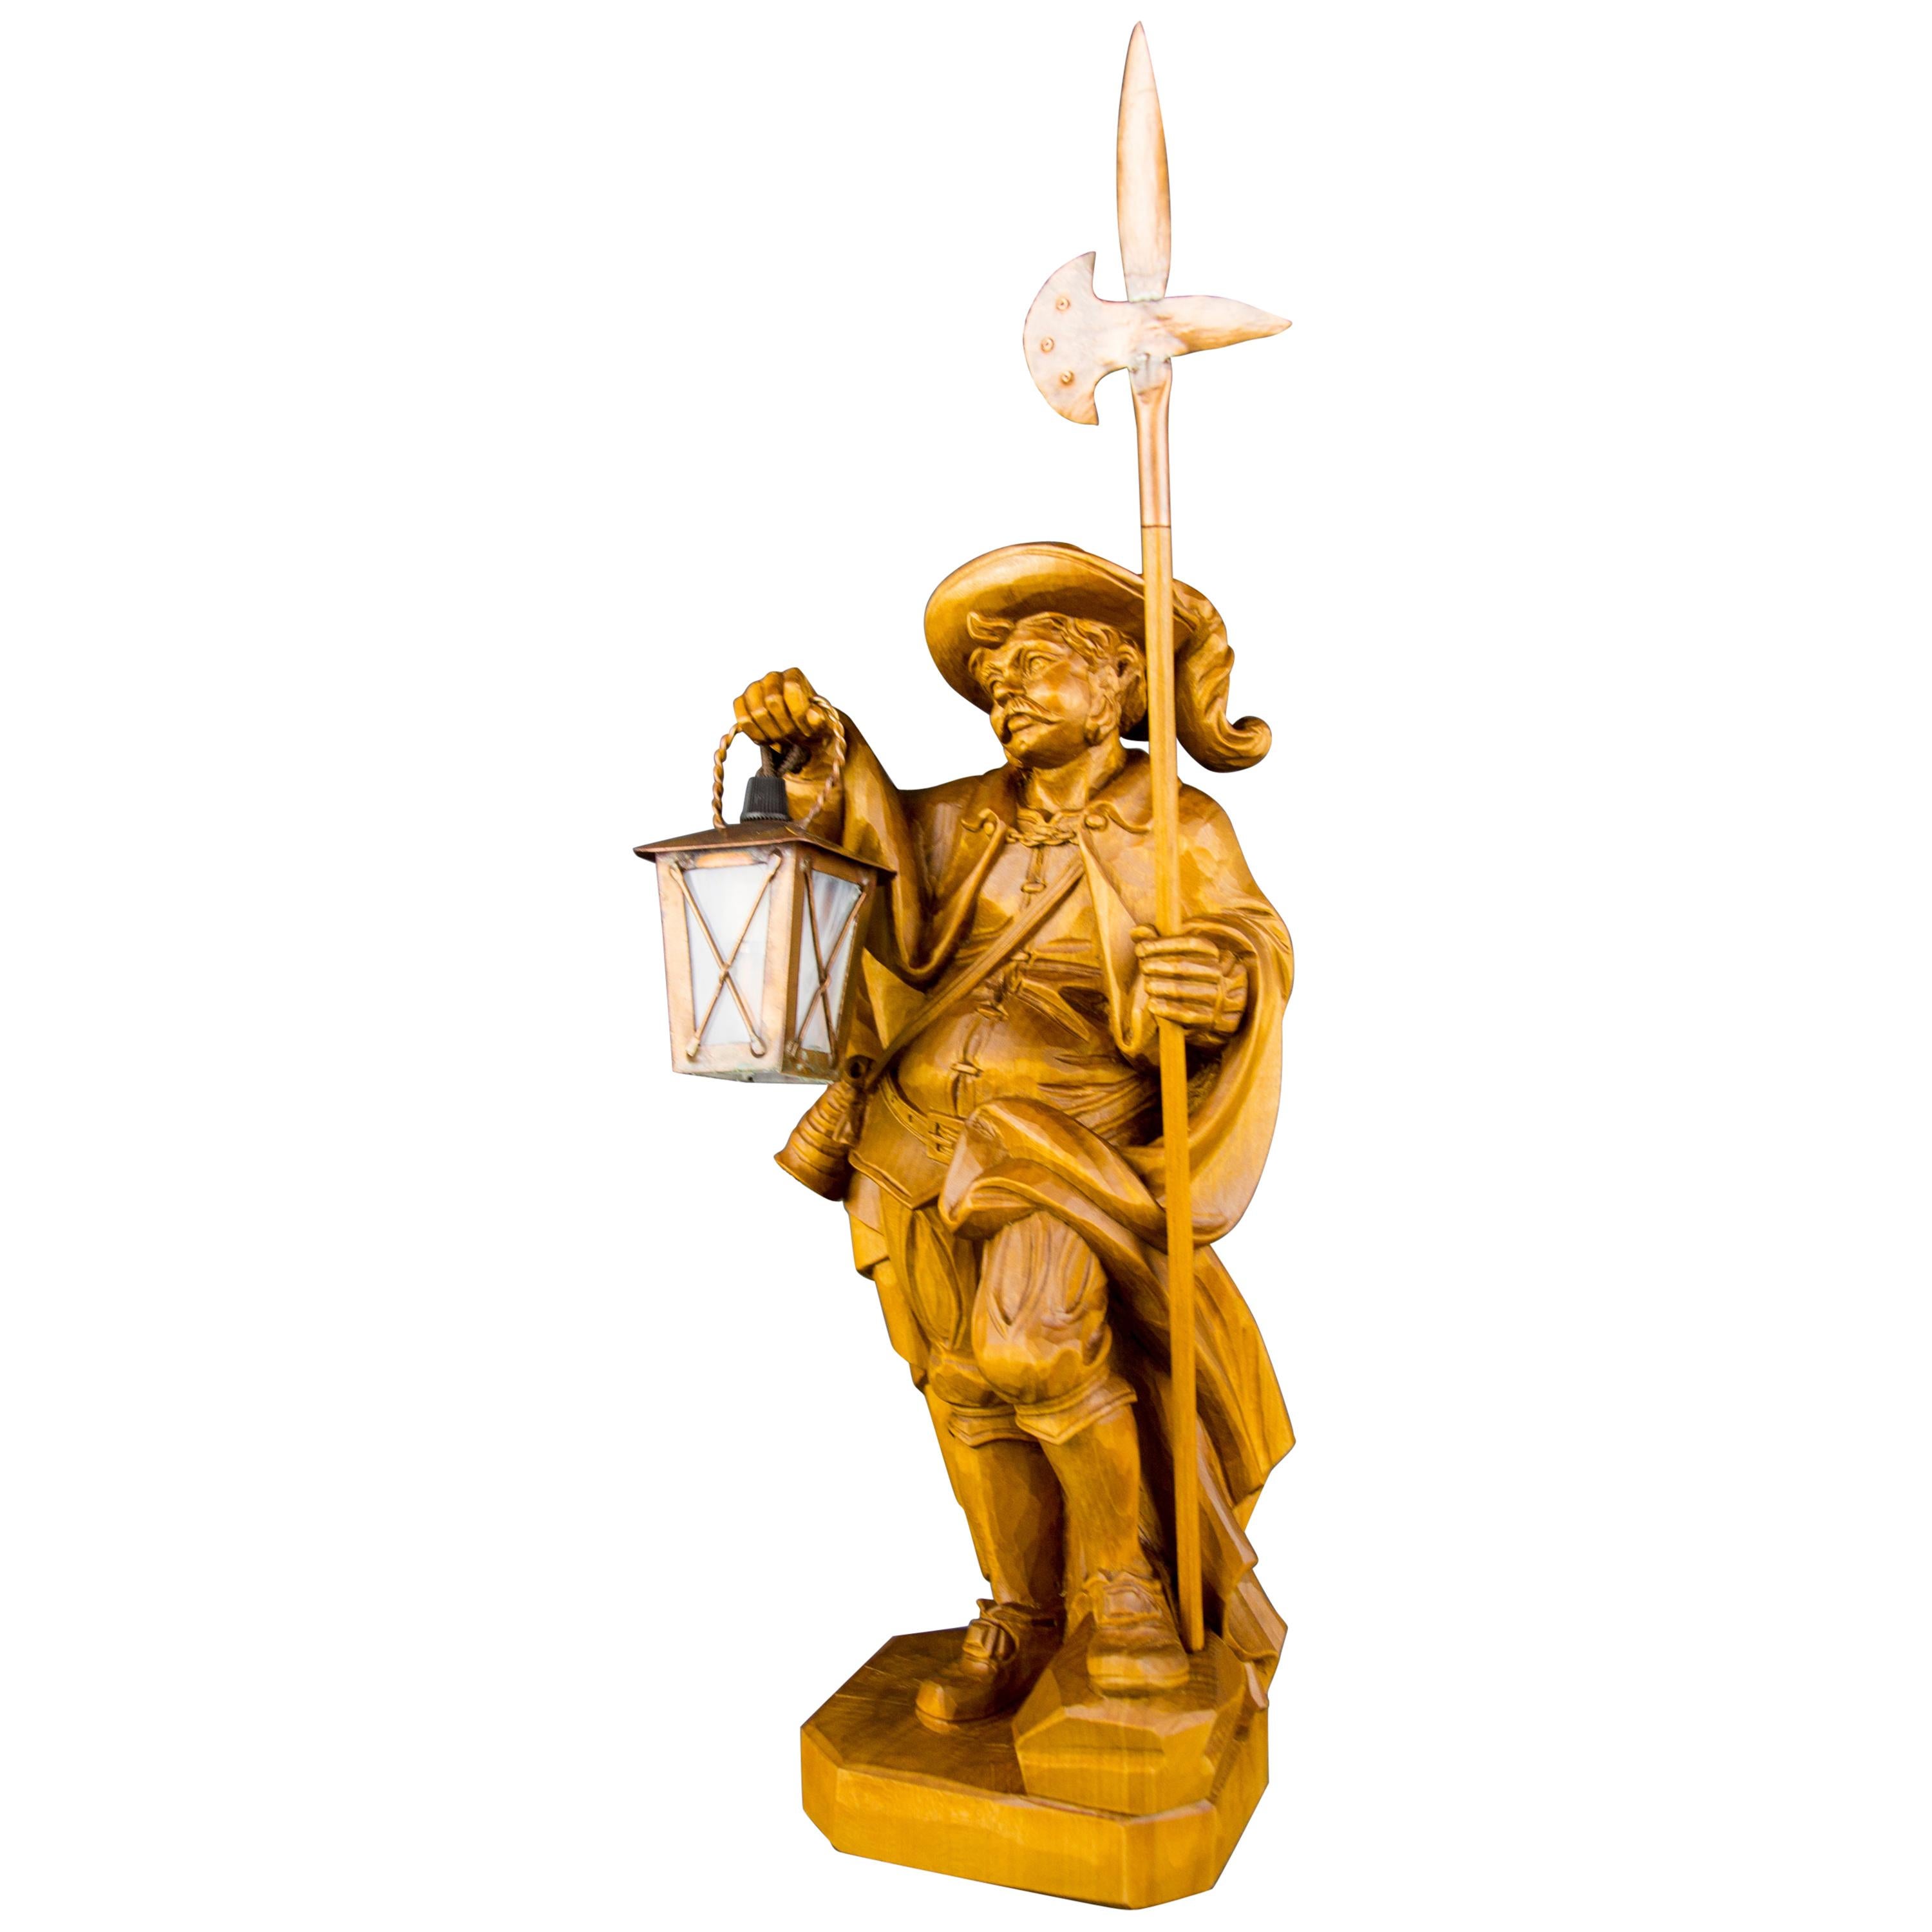 Cette lampe en bois magistralement sculptée à la main présente une belle sculpture d'un veilleur de nuit avec une lanterne et une hallebarde. La lanterne est faite de verre et de cuivre. Cette magnifique lampe-sculpture peut être utilisée comme une